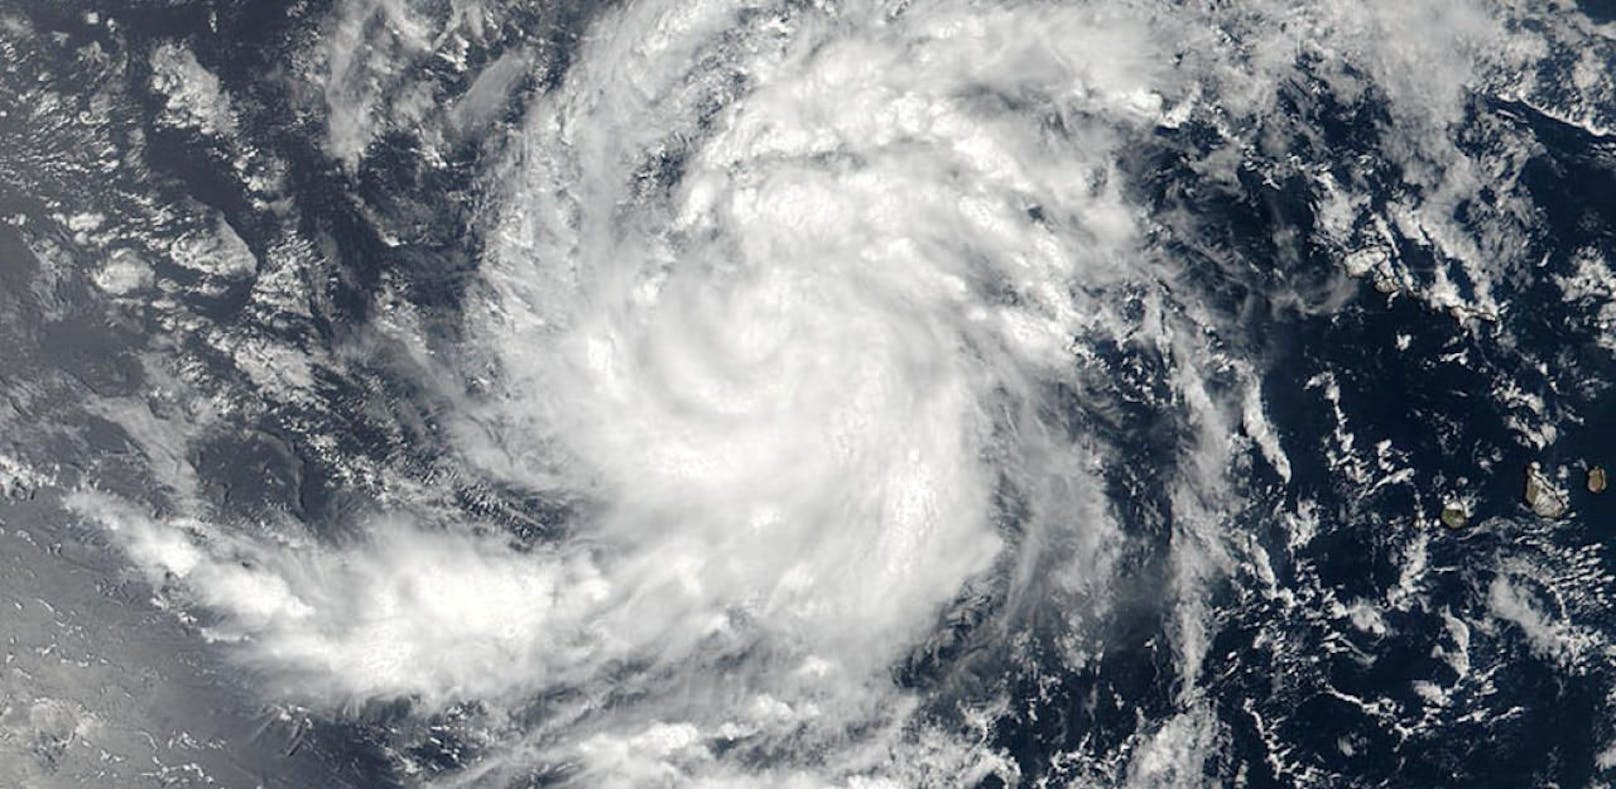 Satellitenbilder zeigen den Tropensturm Irma über dem atlantischen Ozean.